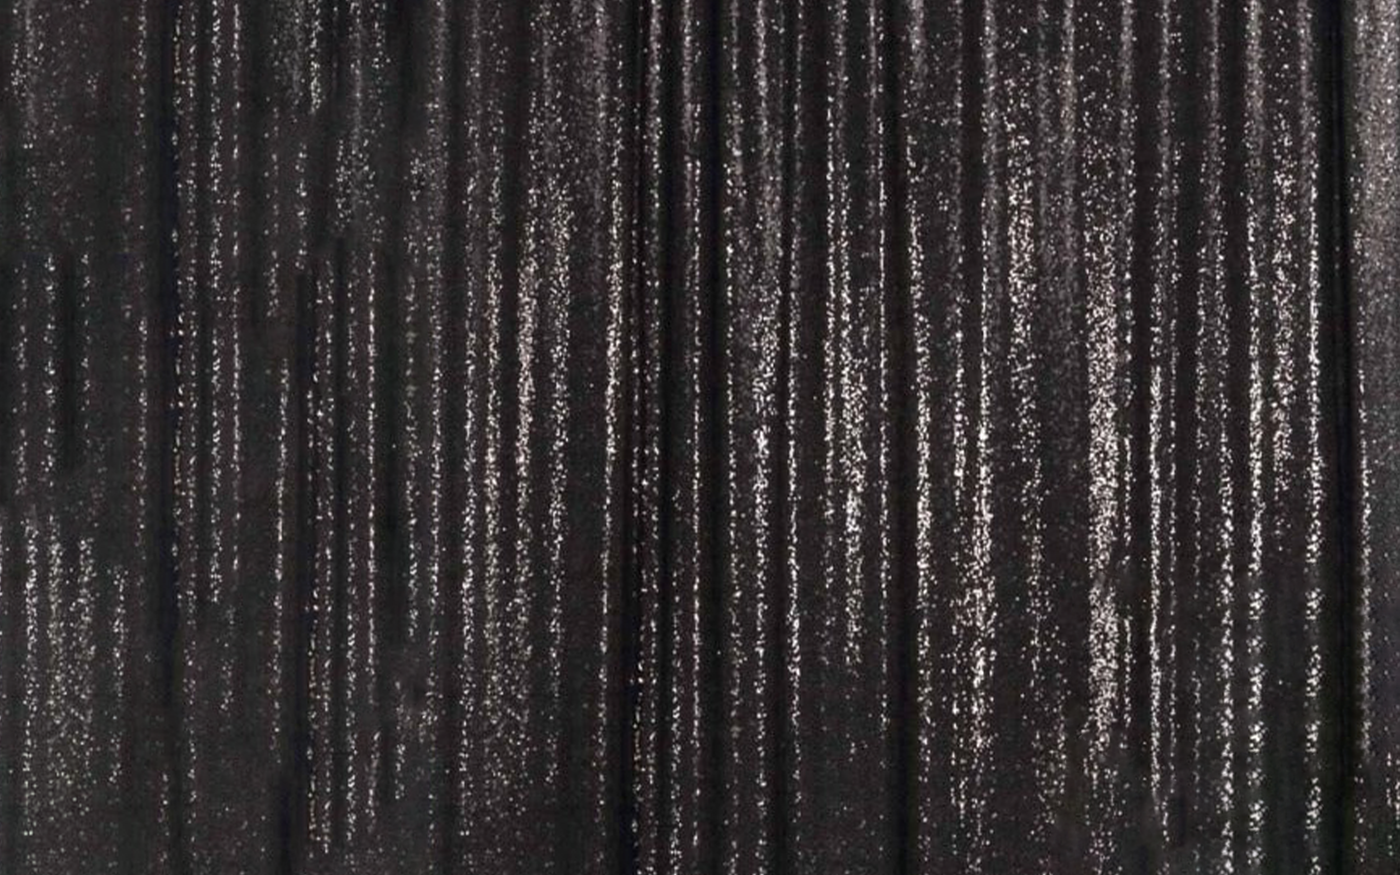 Dark black/grey sequin photo booth backdrop